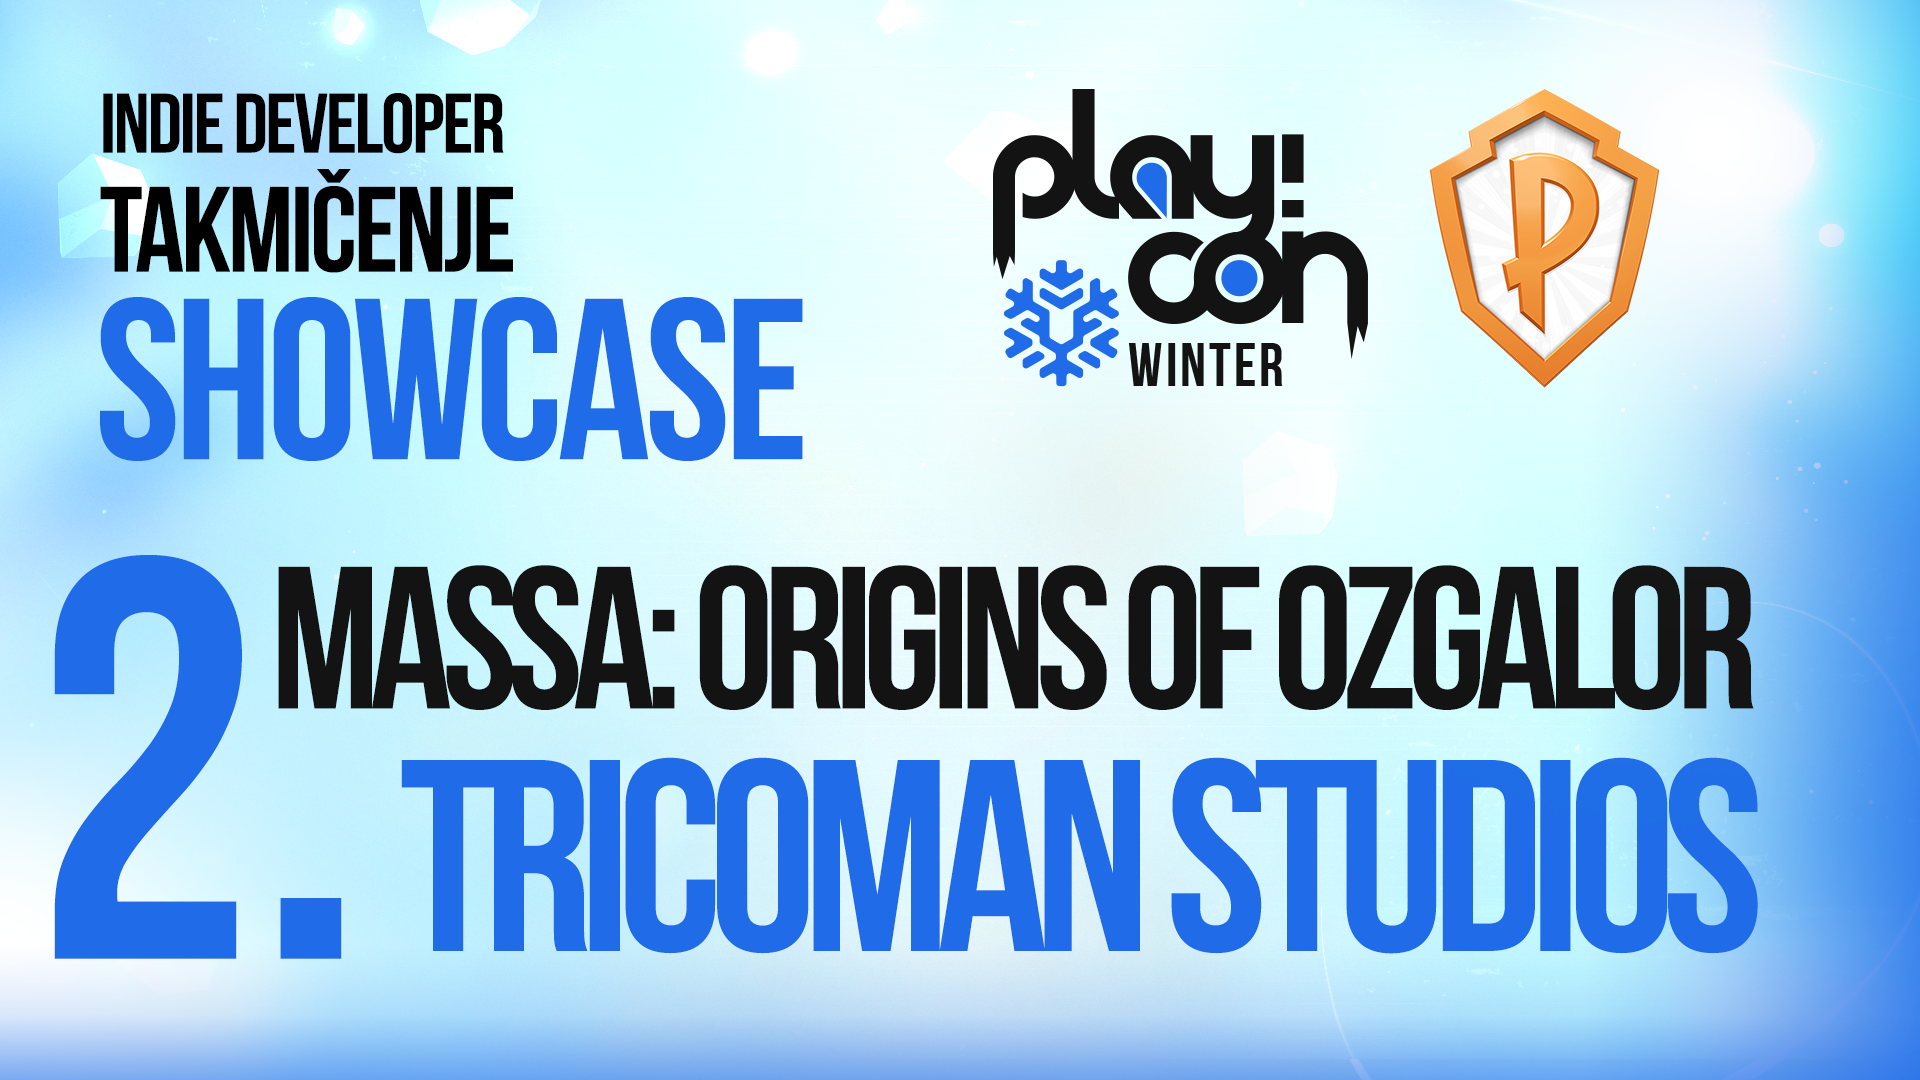 massa-indieshowcase-playcon2021